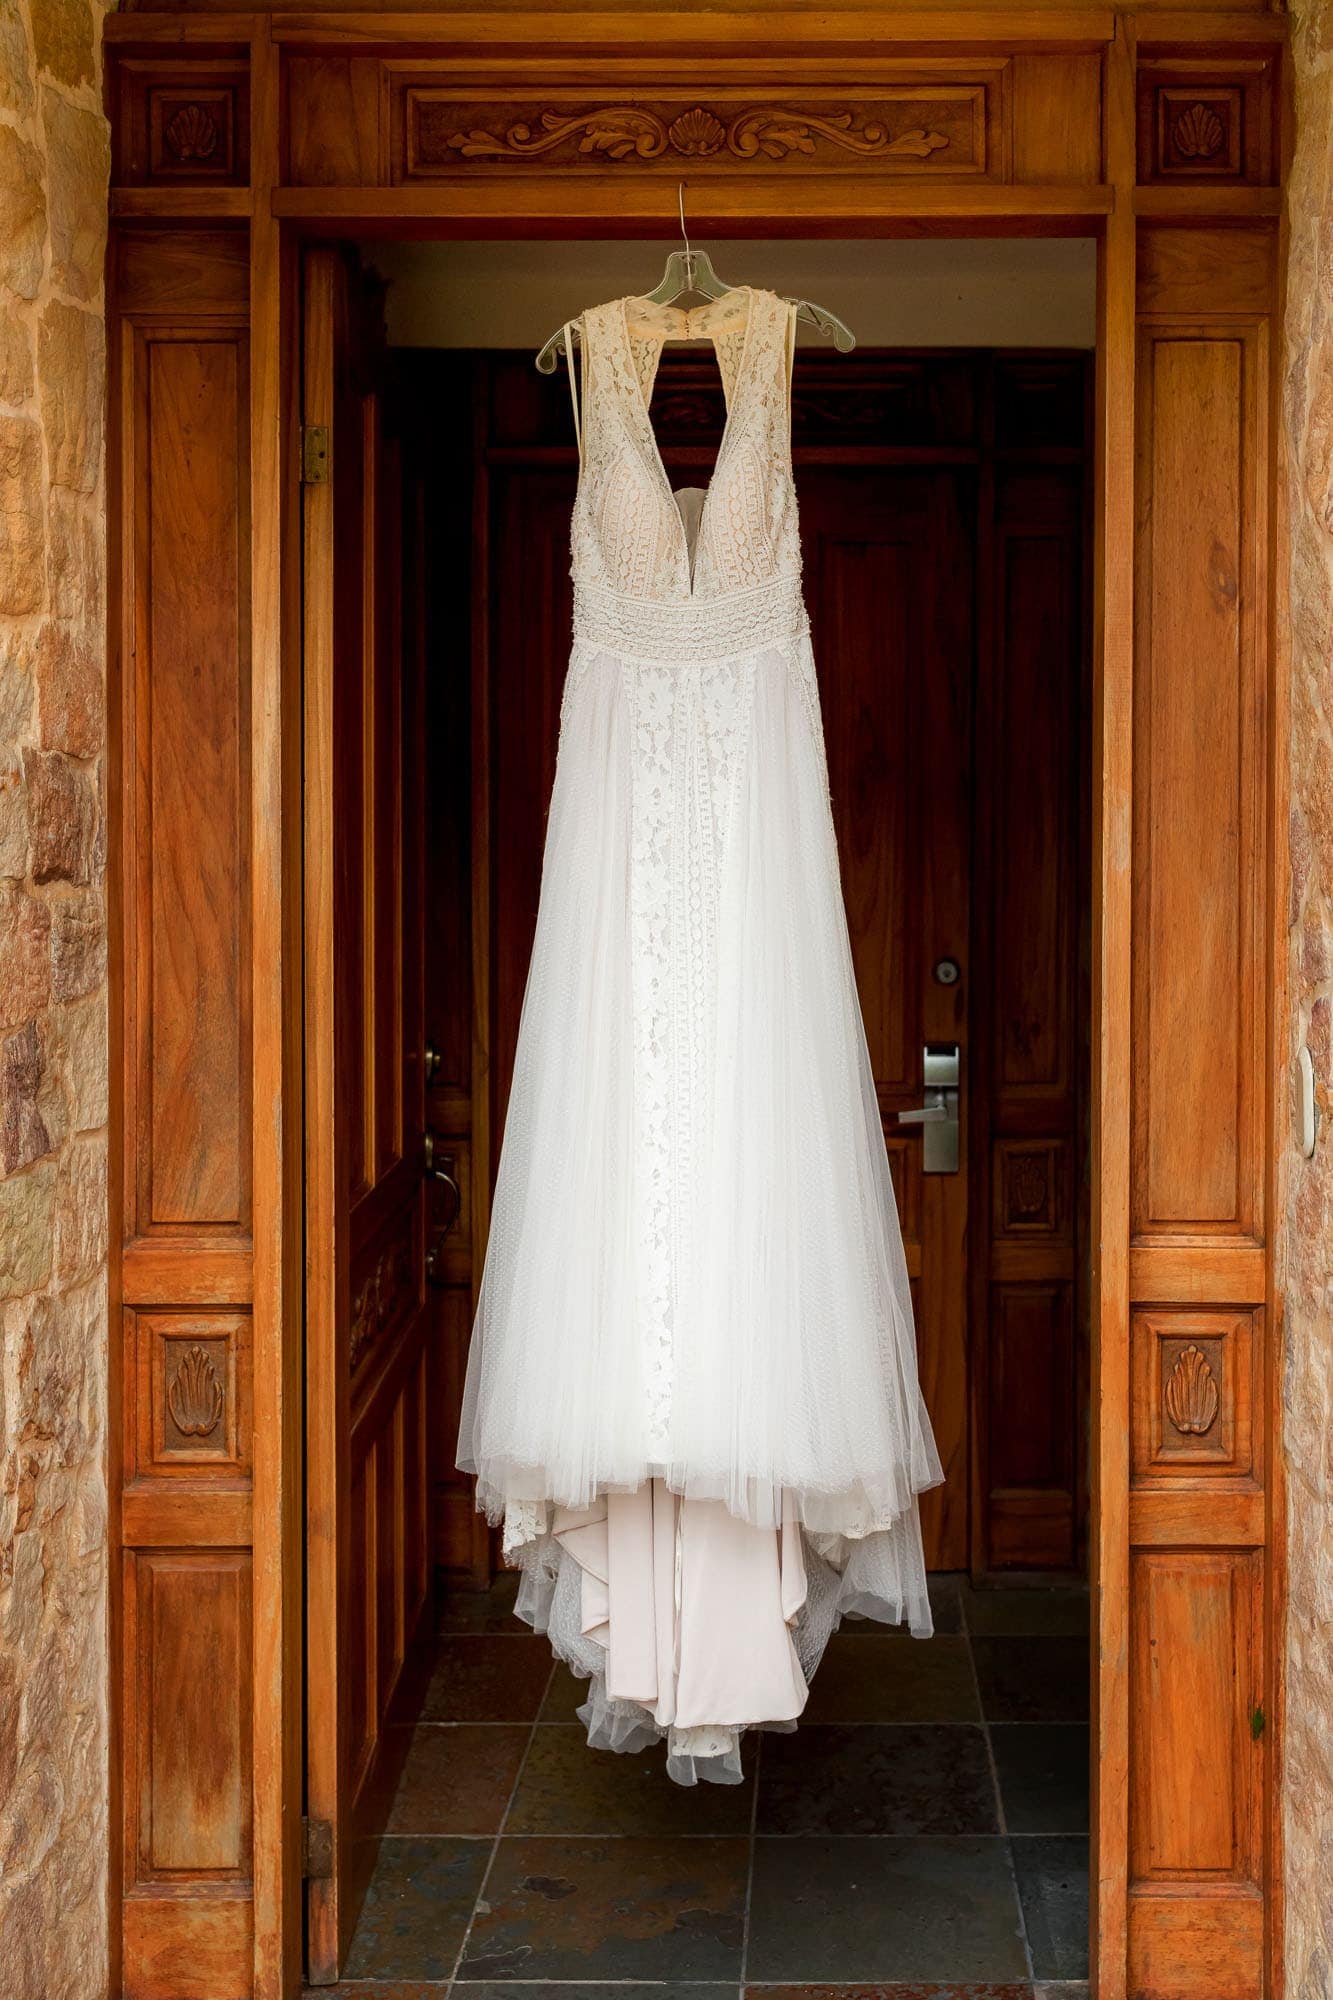 The dress hanging in a doorway